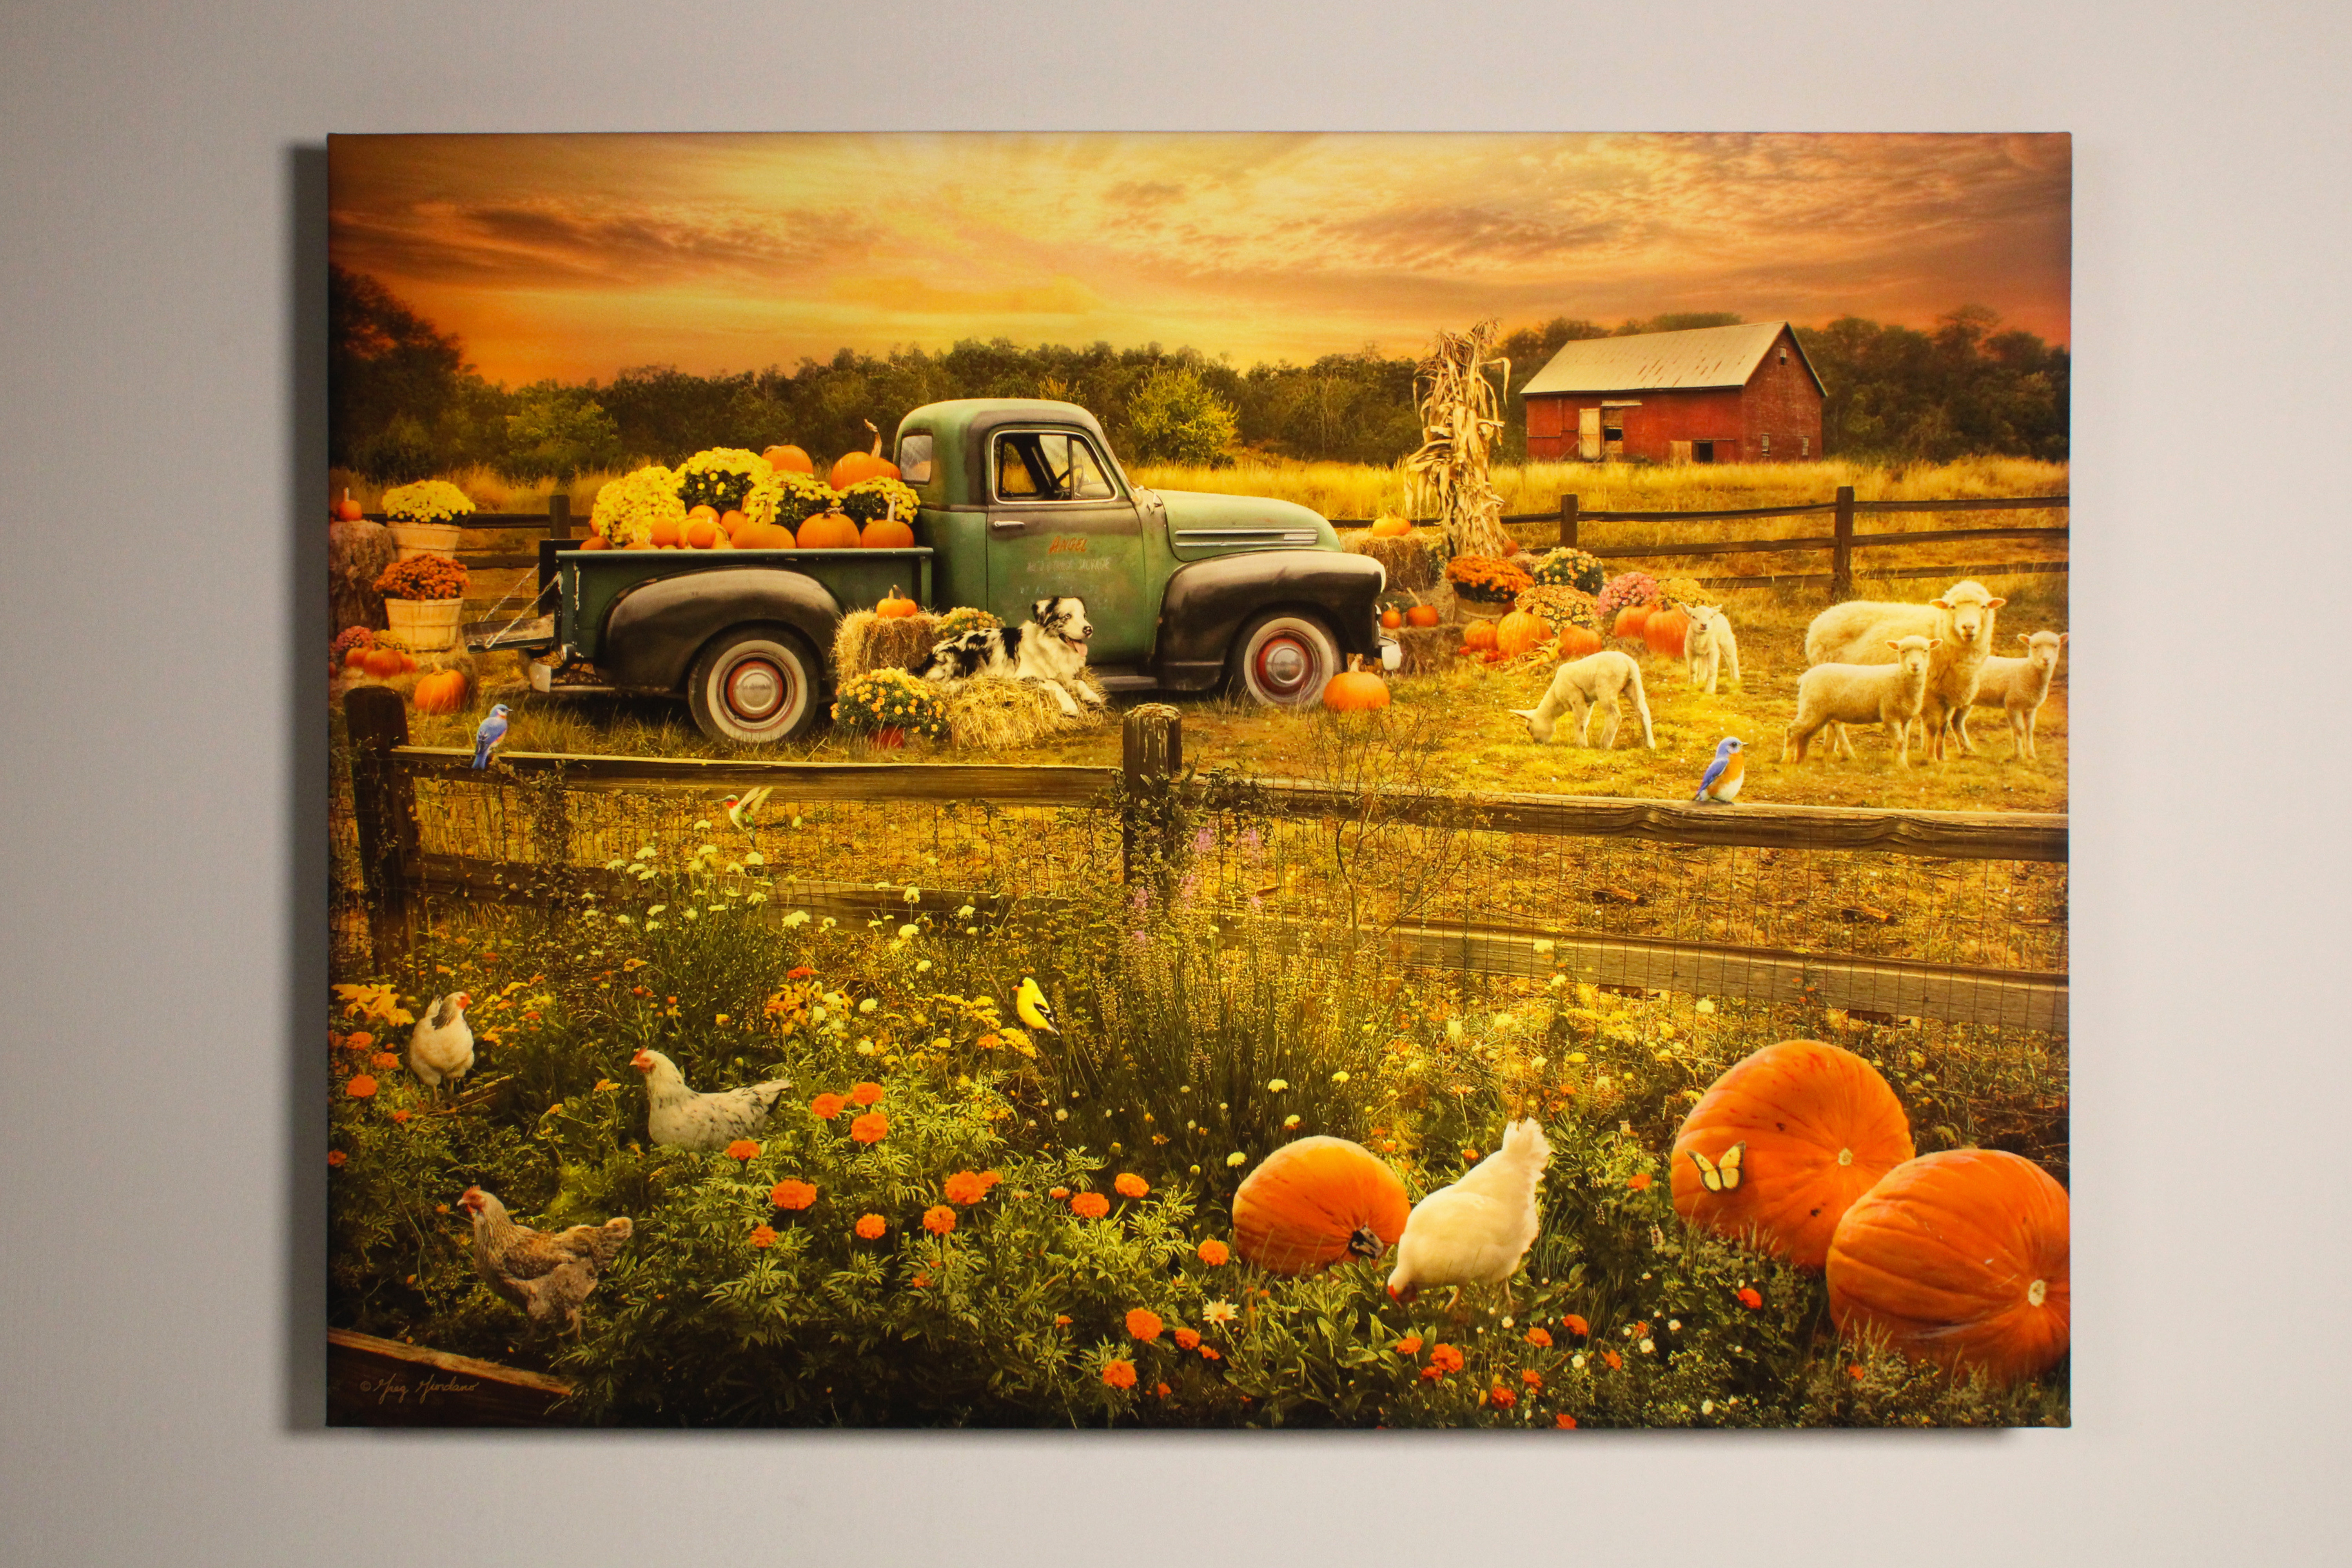 Jack's Patch Pumpkin Farm Art Print Halloween Wall Art 